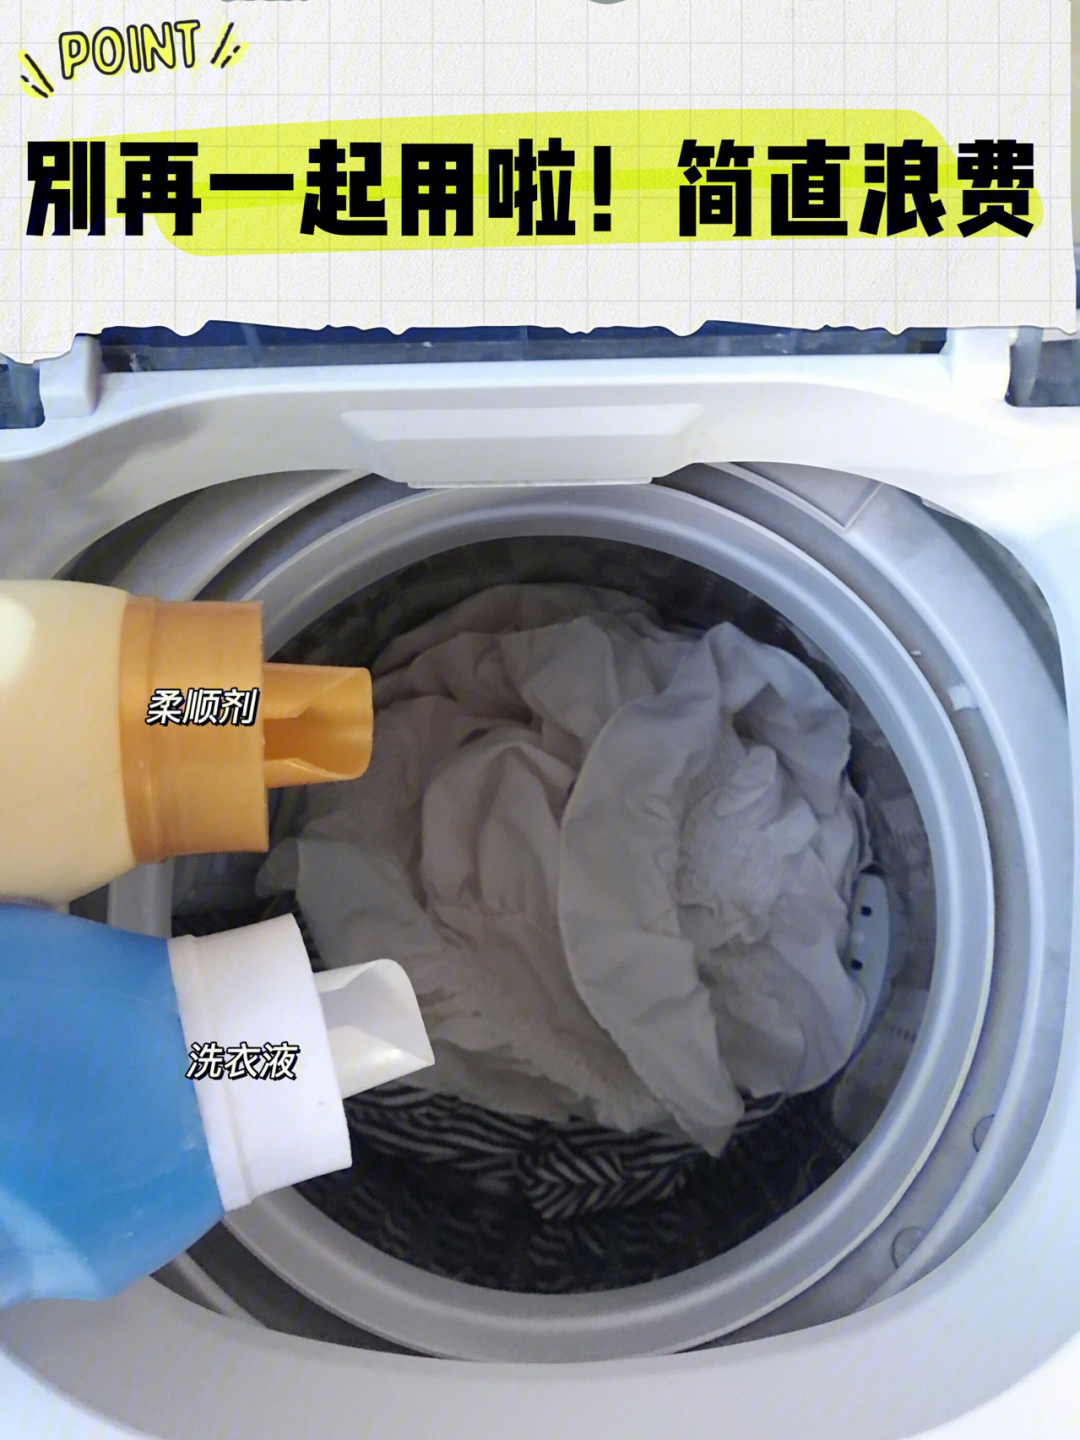 老式洗衣机柔顺剂入口图片